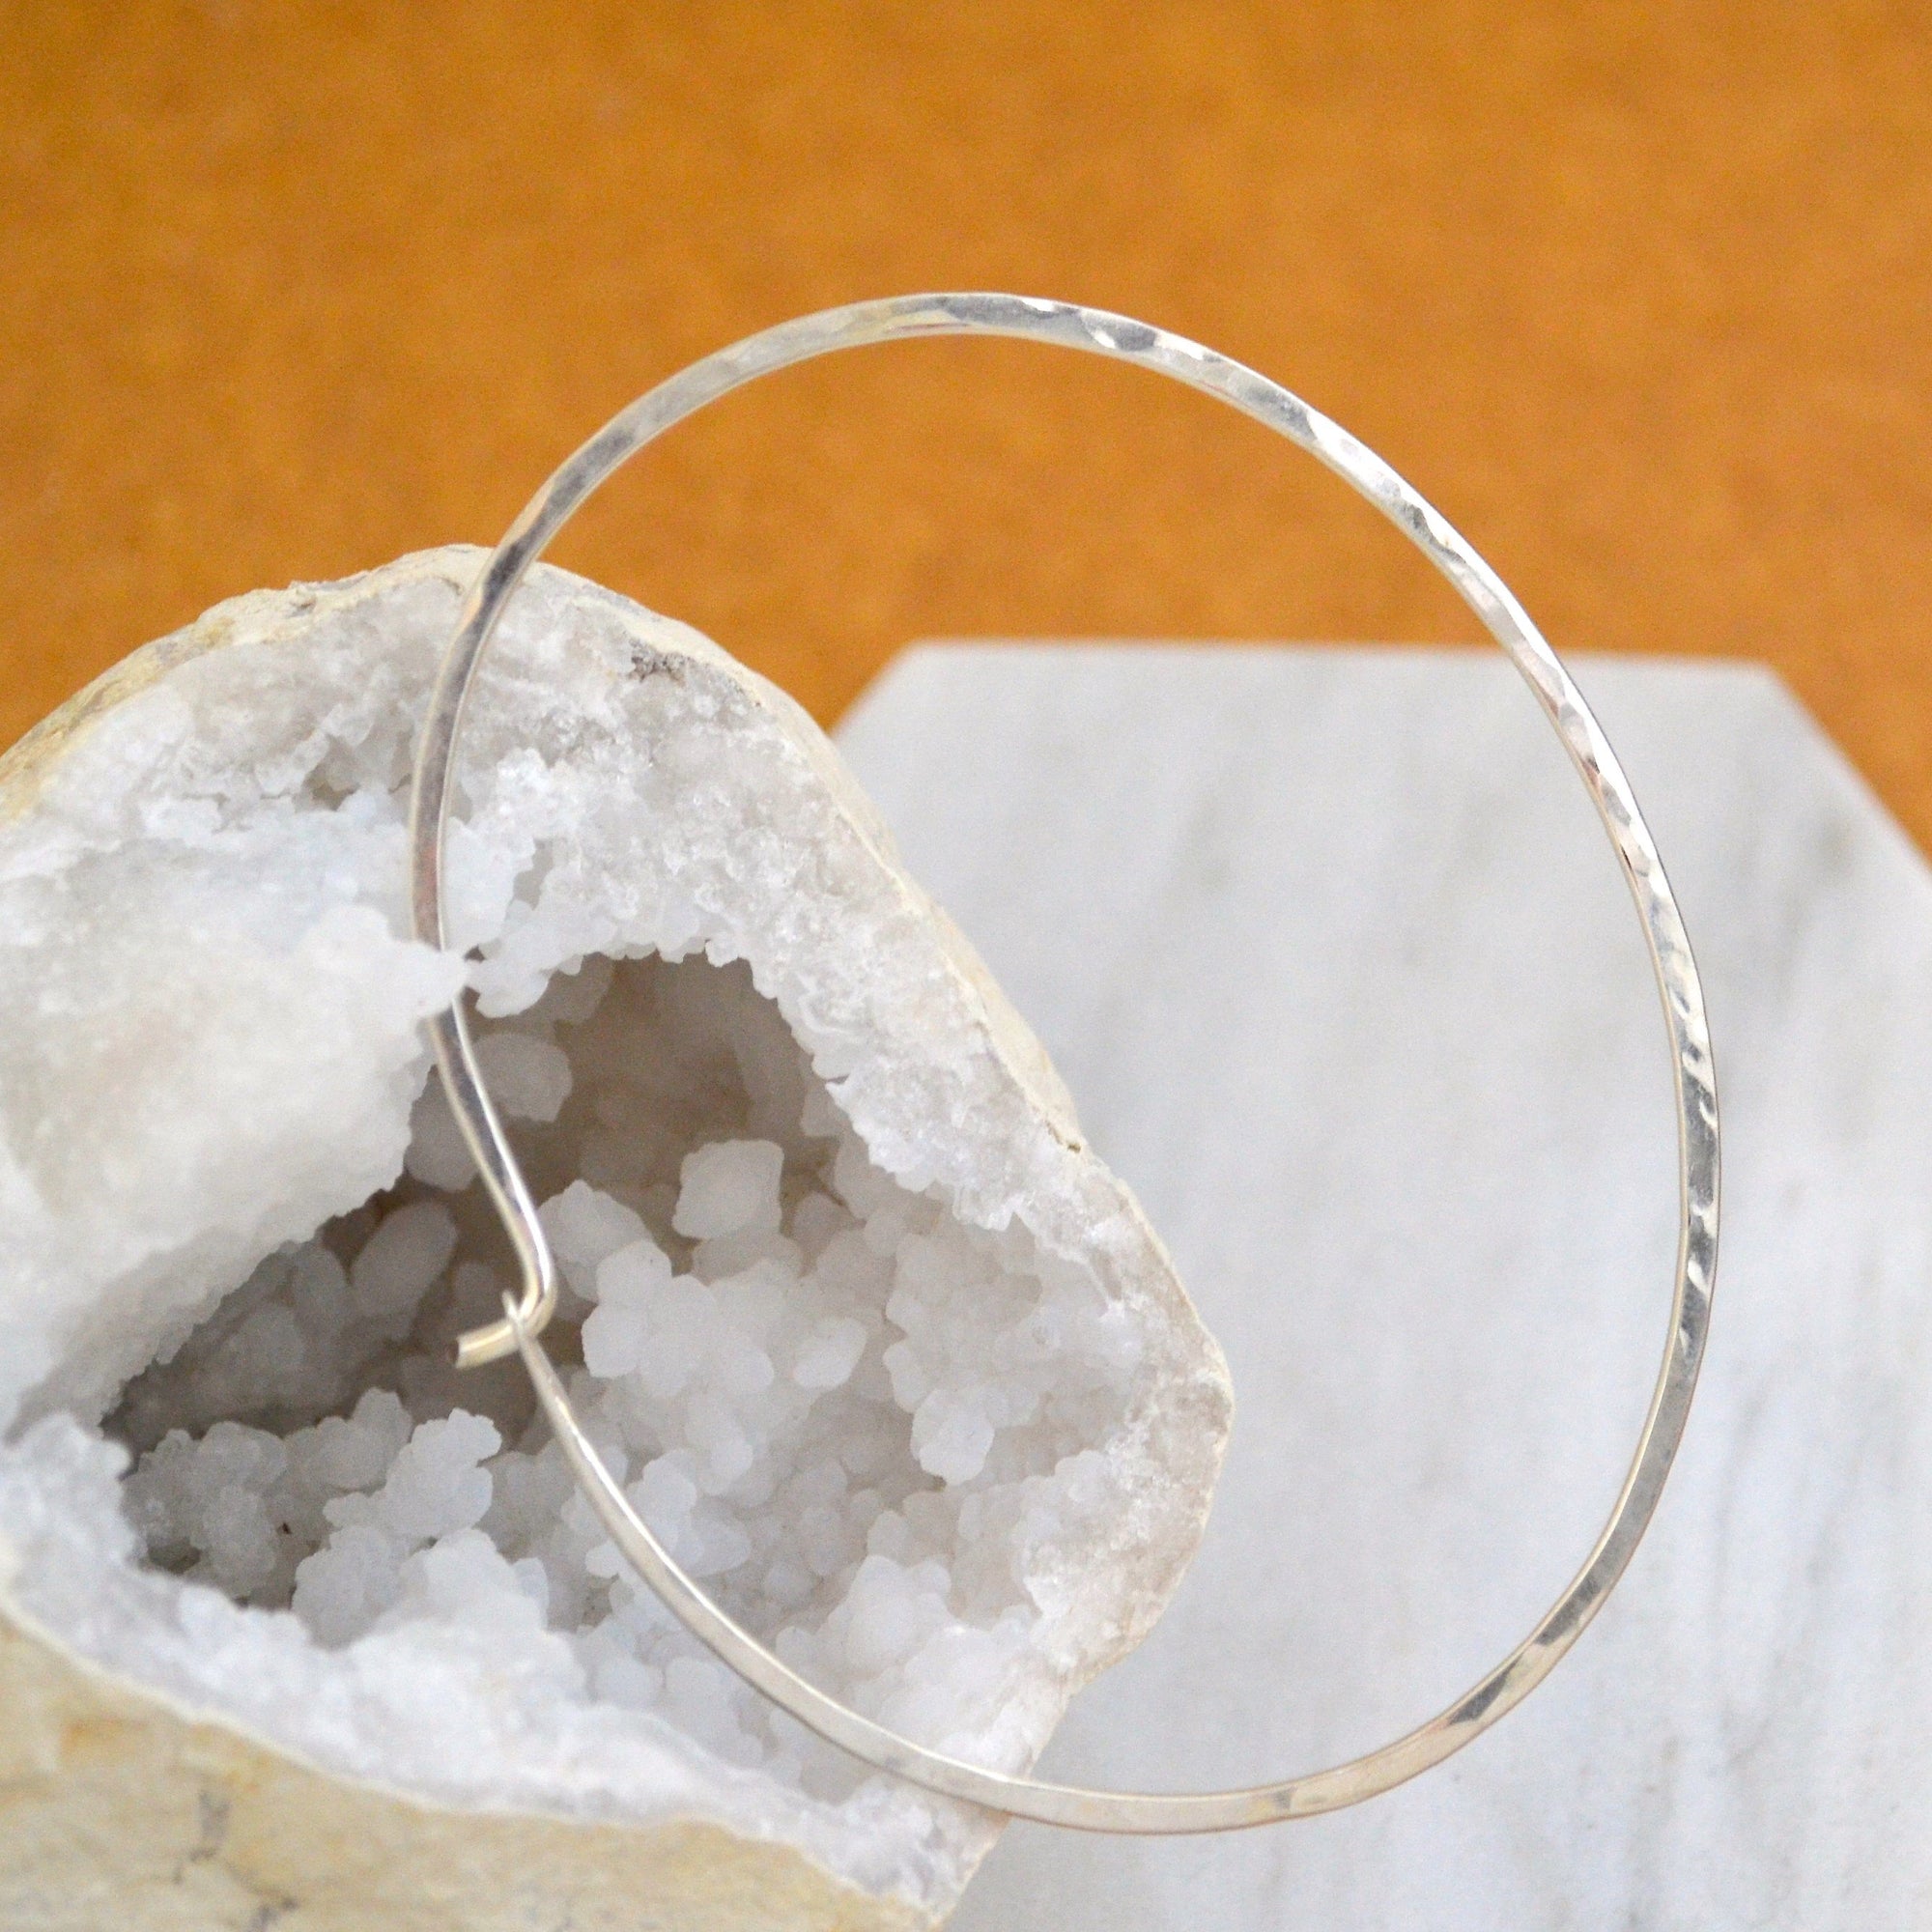 Sliver Bracelet - handmade oval bangle bracelet with hammered shimmer - Foamy Wader